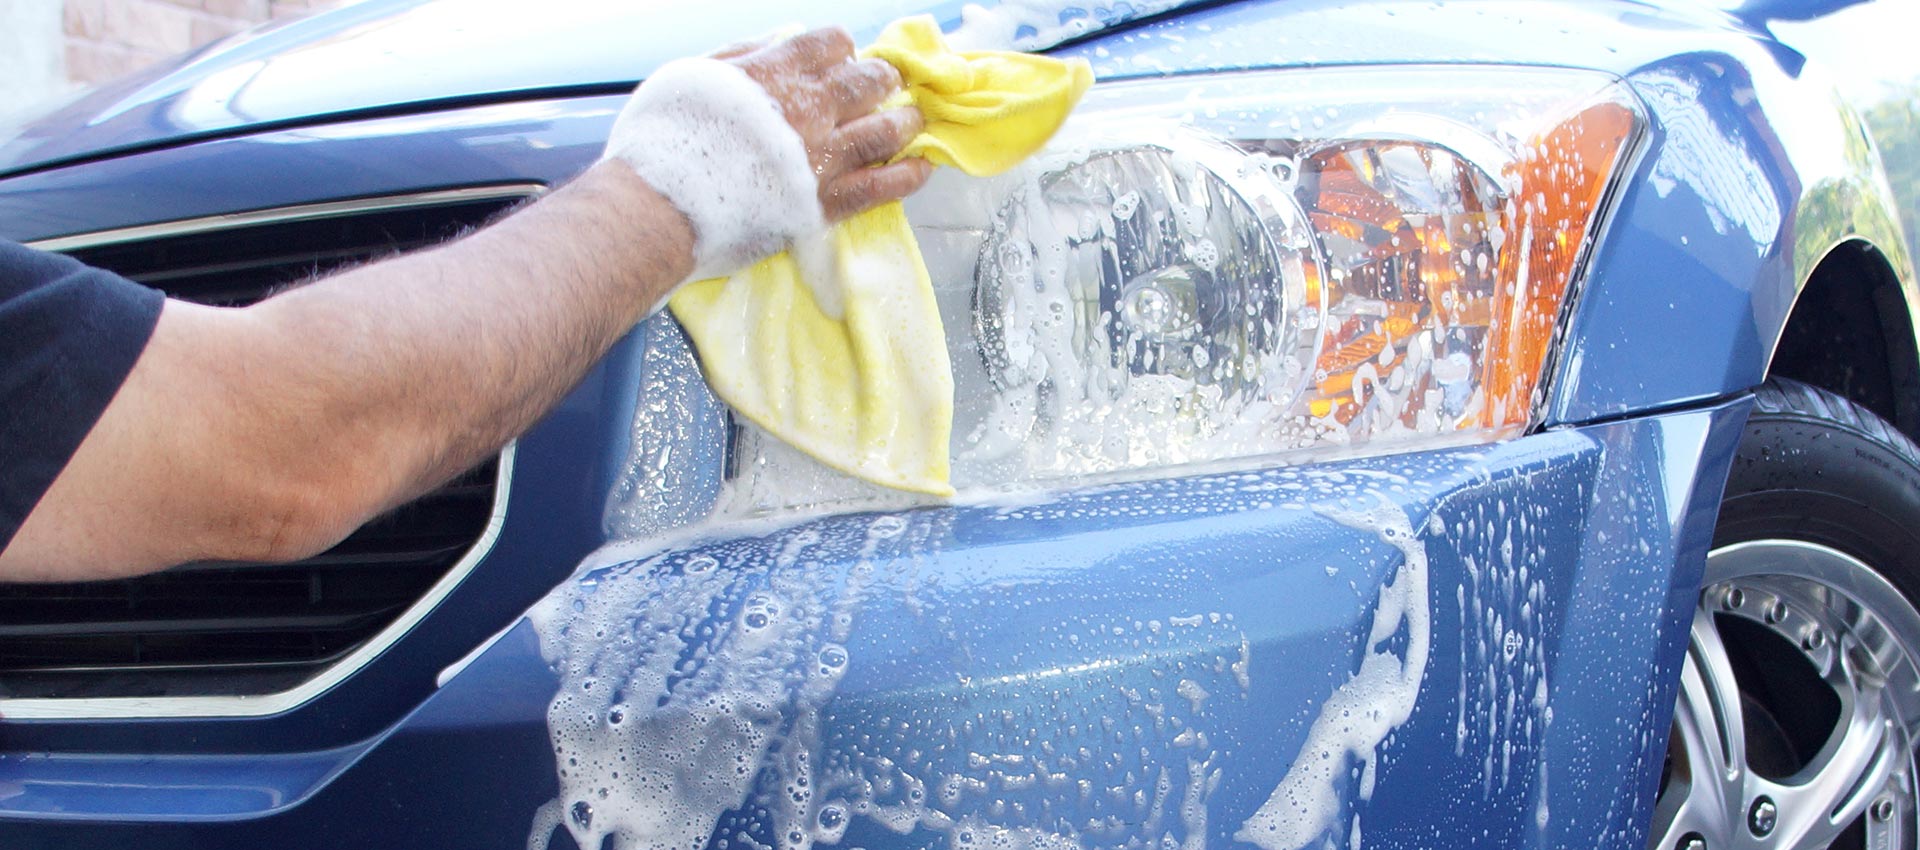 Вода после мойки машины. Car Wash автомойка. Губка для мойки автомобиля. Мытье автомобиля. Самостоятельная мойка автомобиля.